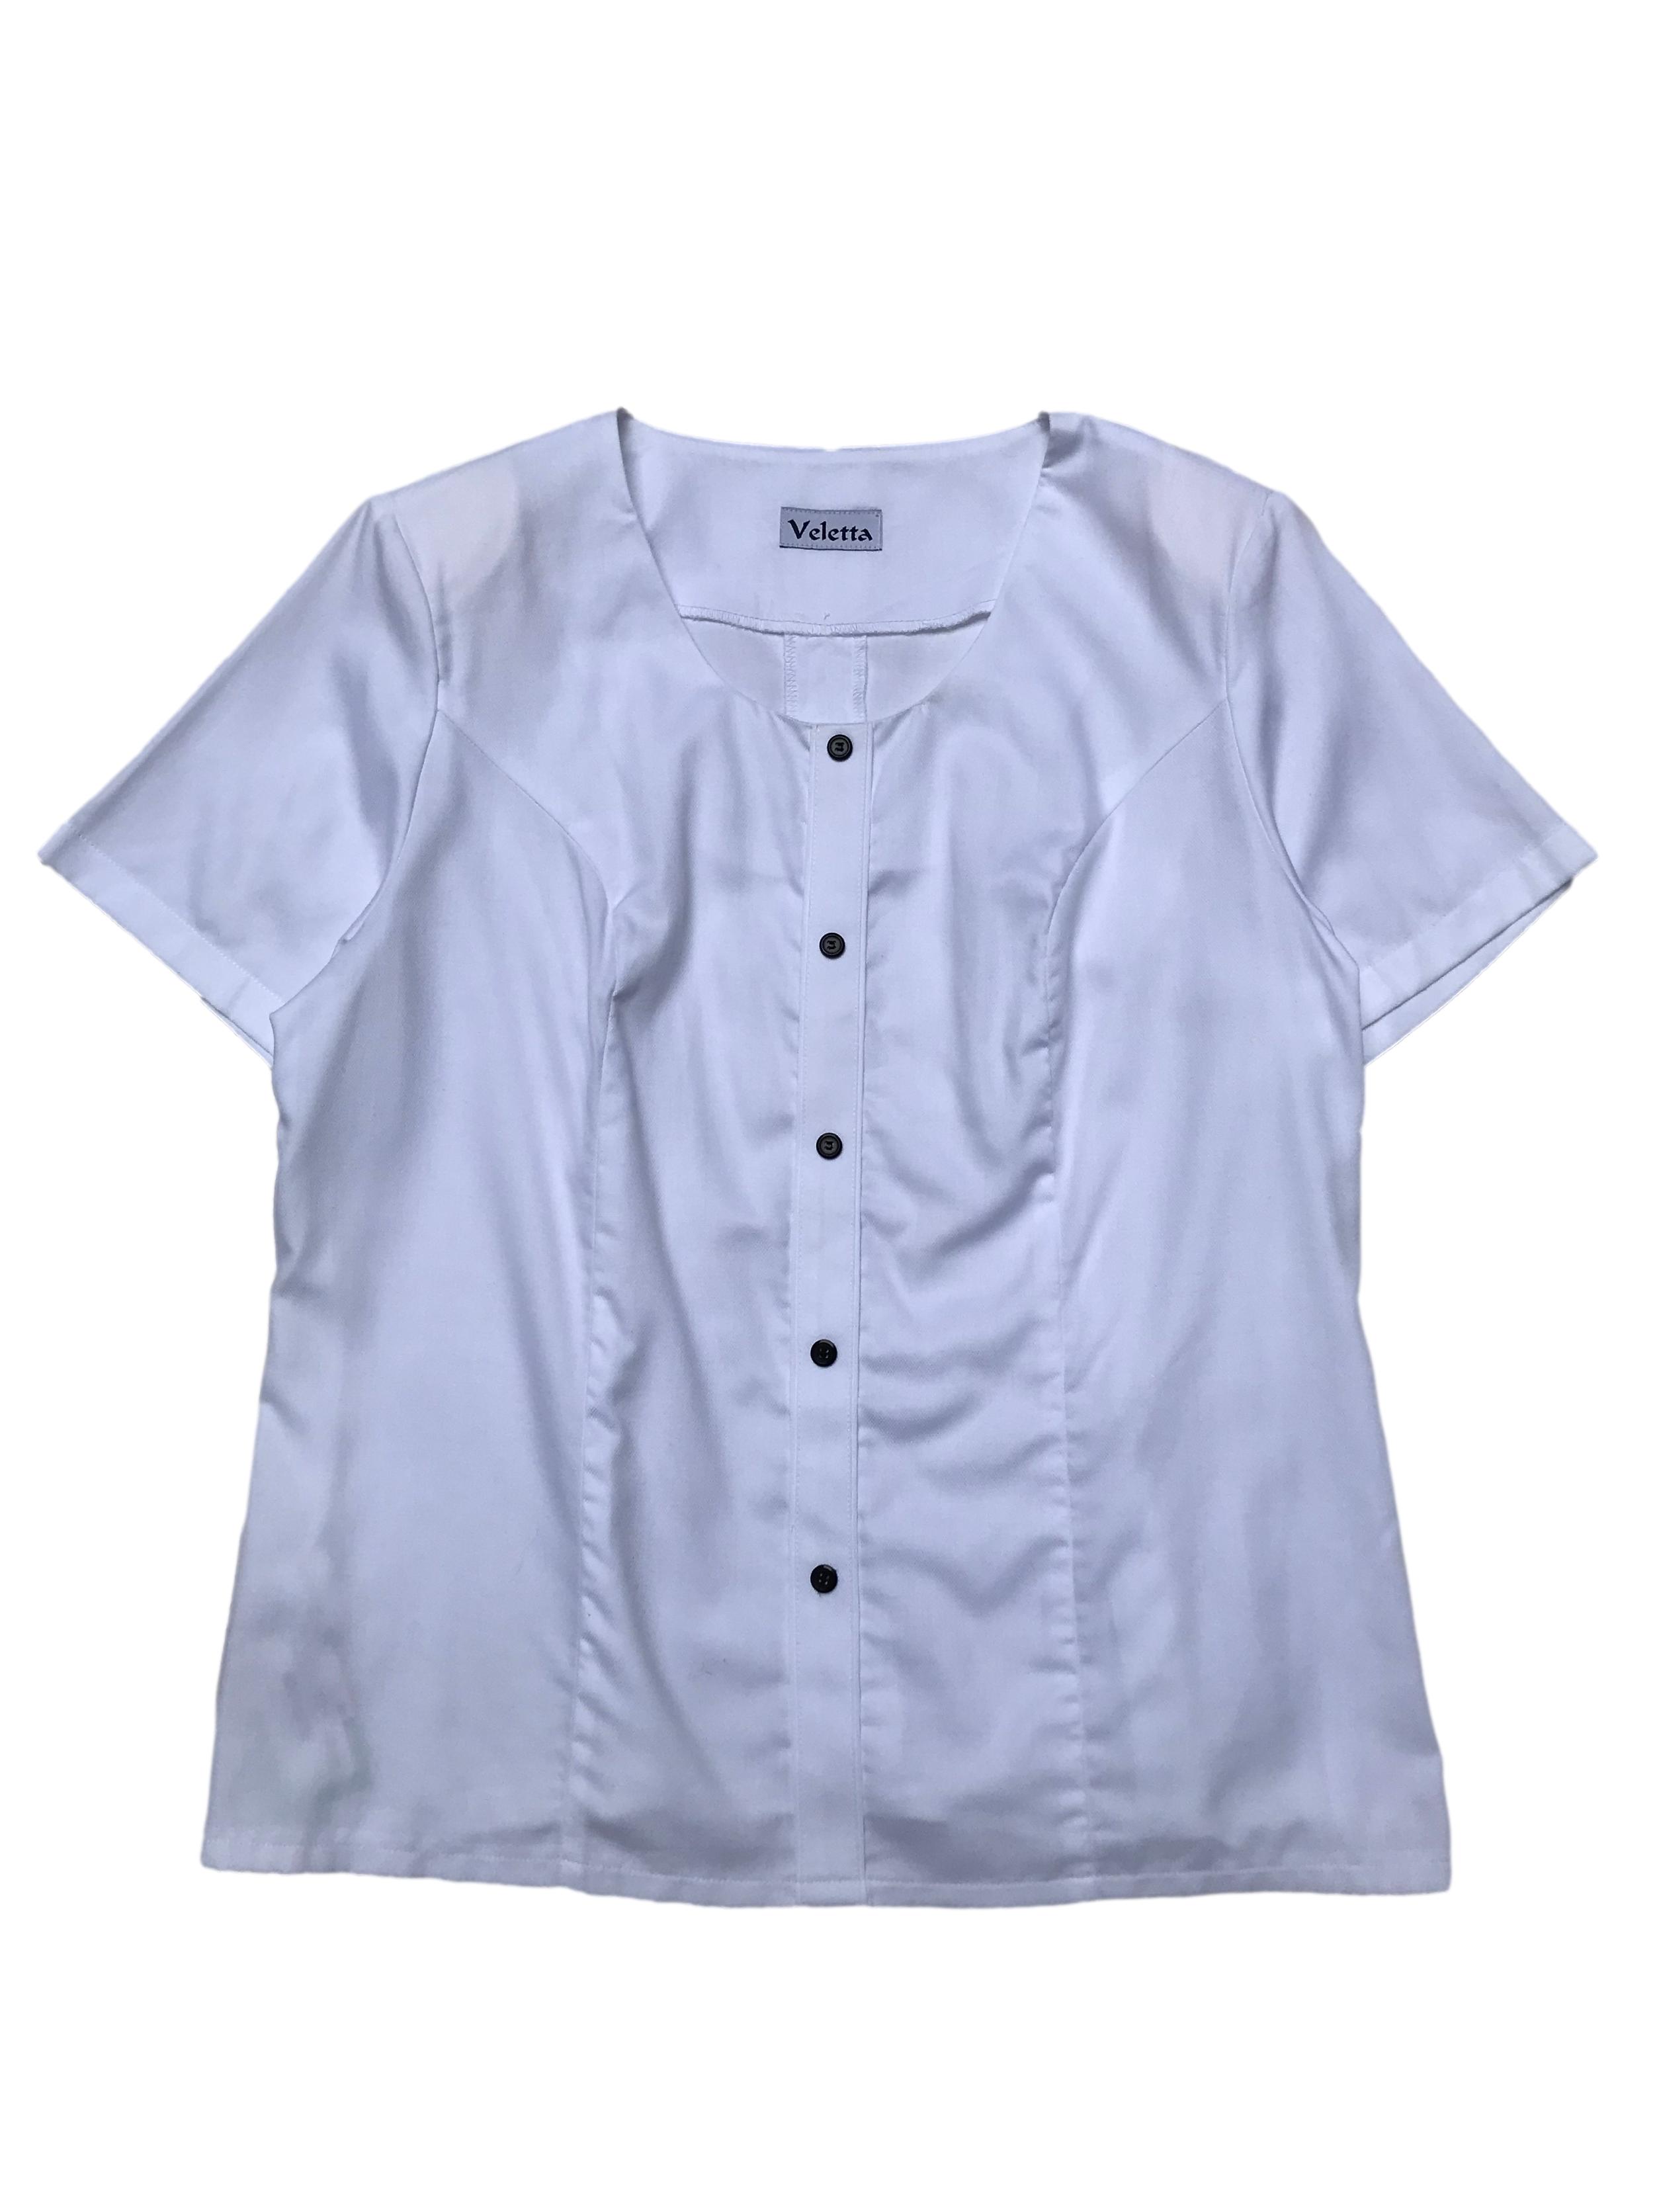 Blusa blanca 65% algodón con botones al centro, pinzas delanteras y traseras, hombreras y cierre lateral. Busto 112cm Largo 60cm 